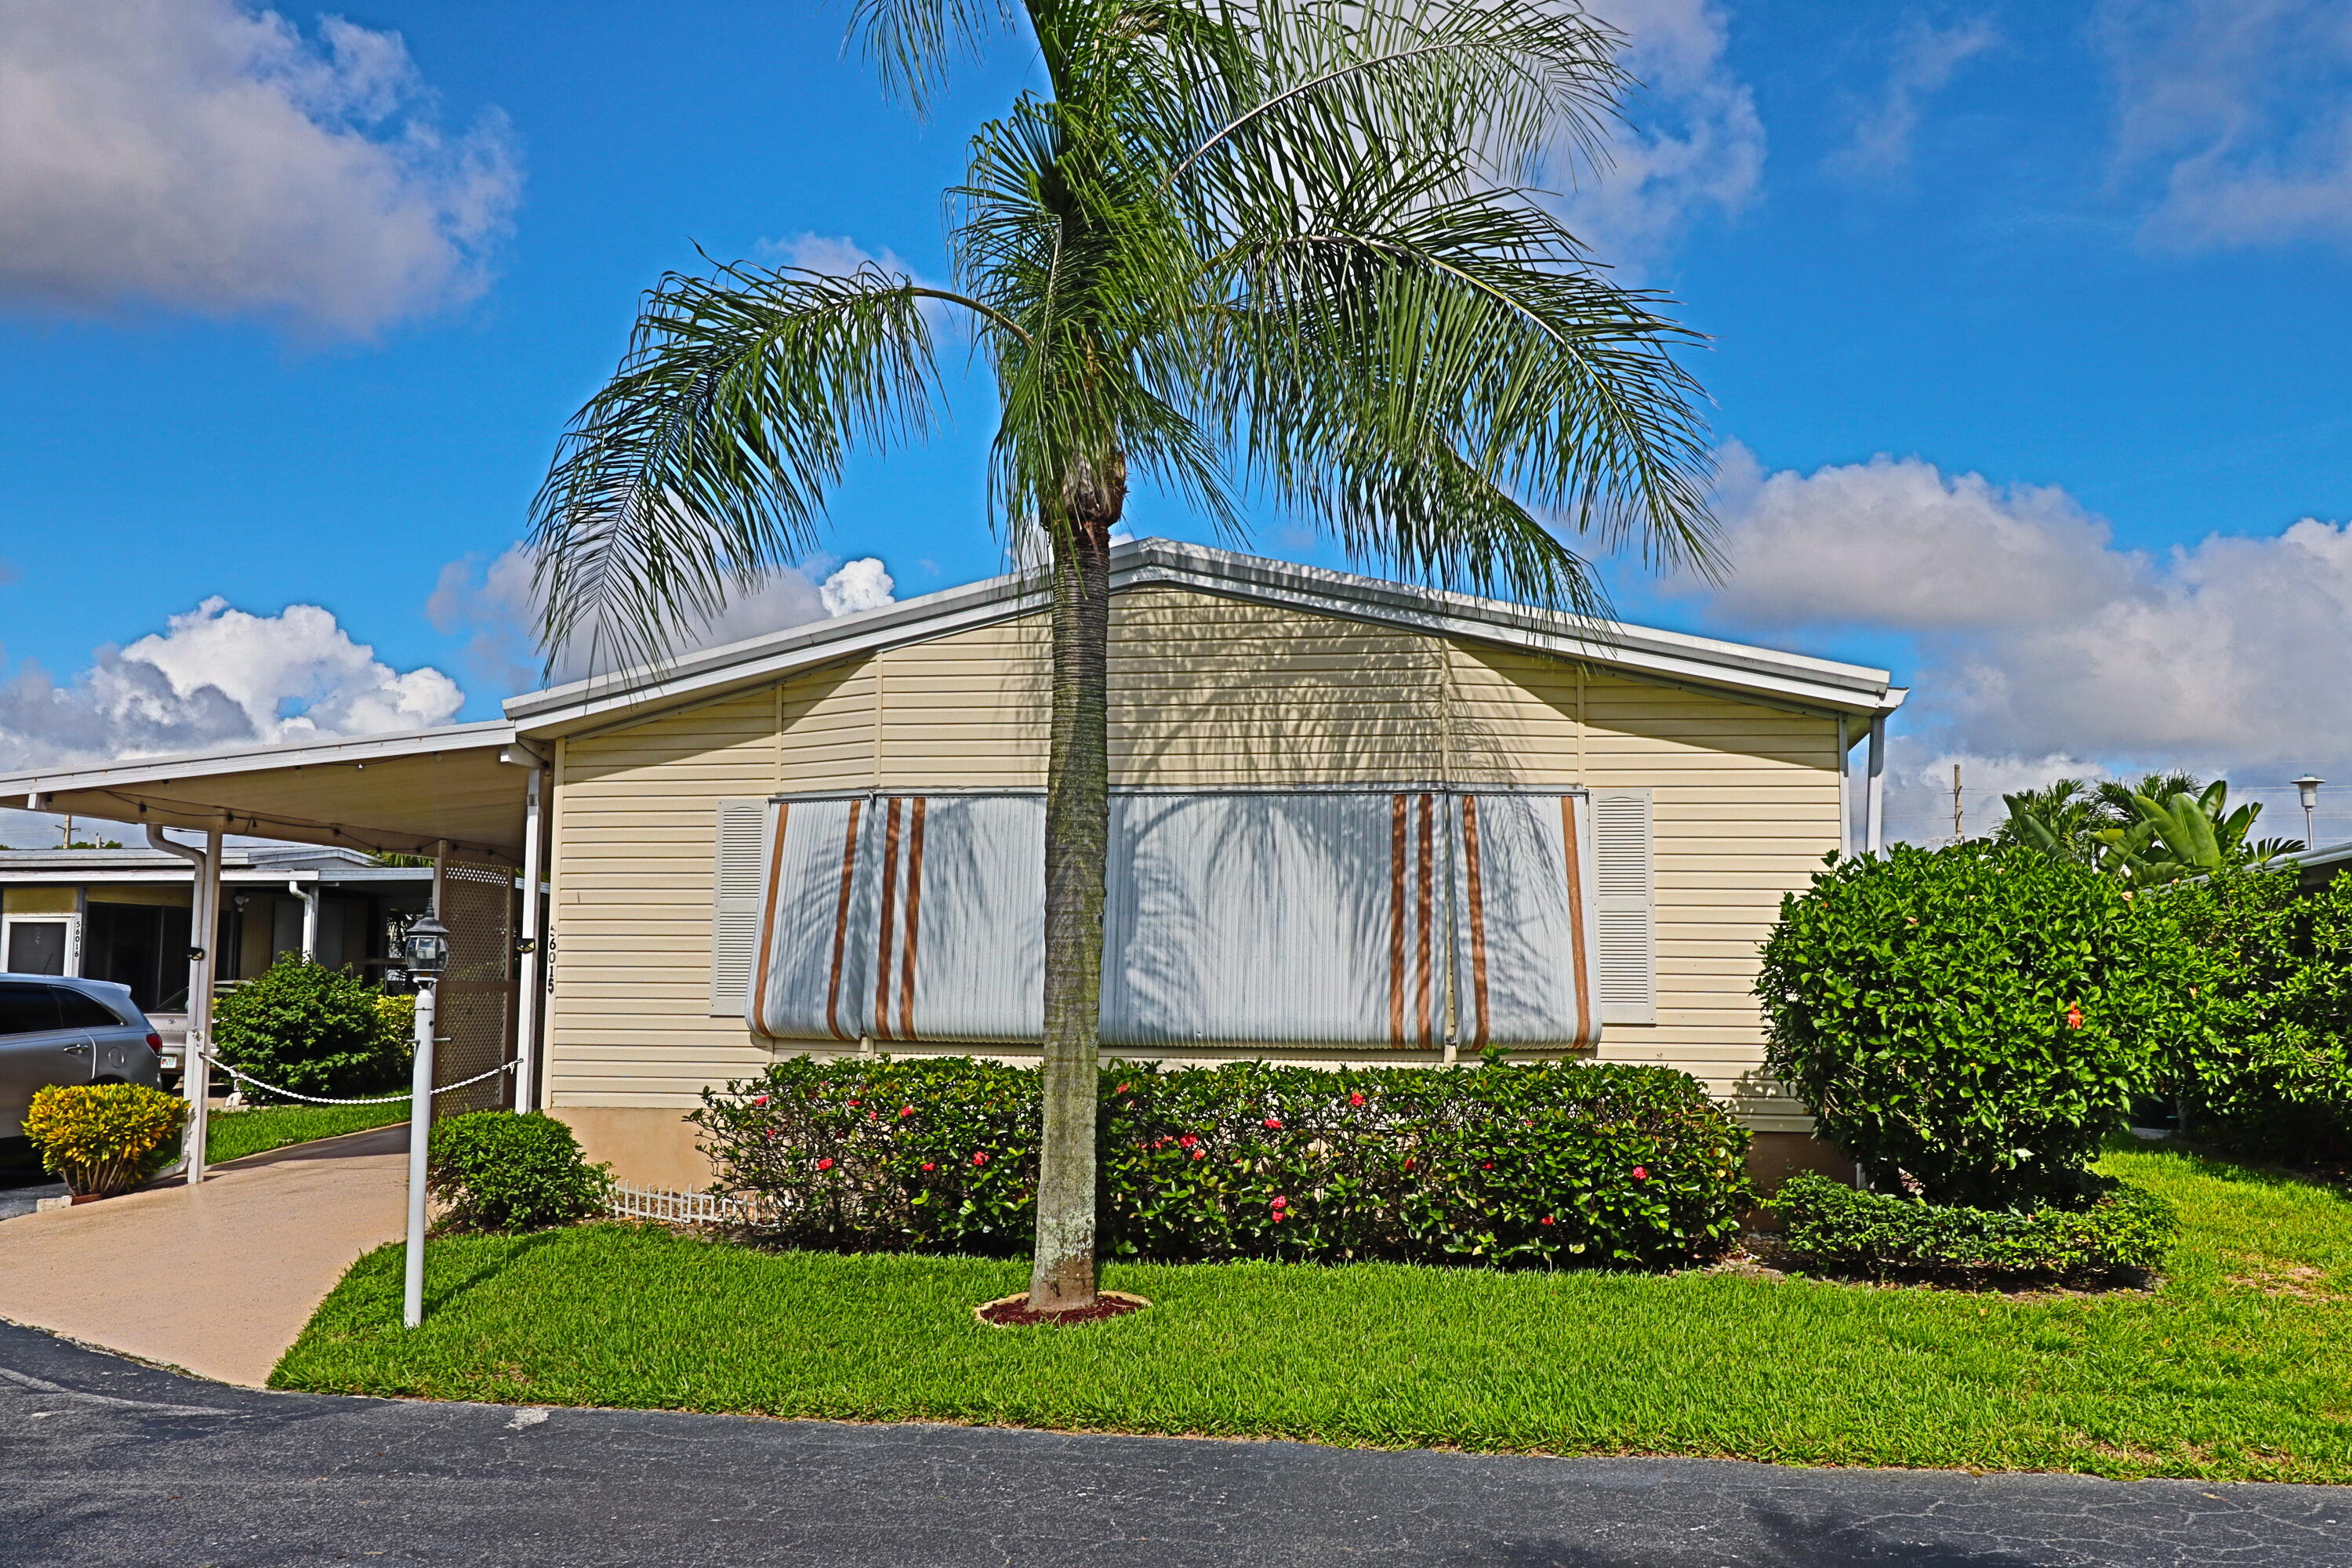 Property for Sale at 56015 Amparo Bay, Boynton Beach, Palm Beach County, Florida - Bedrooms: 2 
Bathrooms: 2  - $260,000